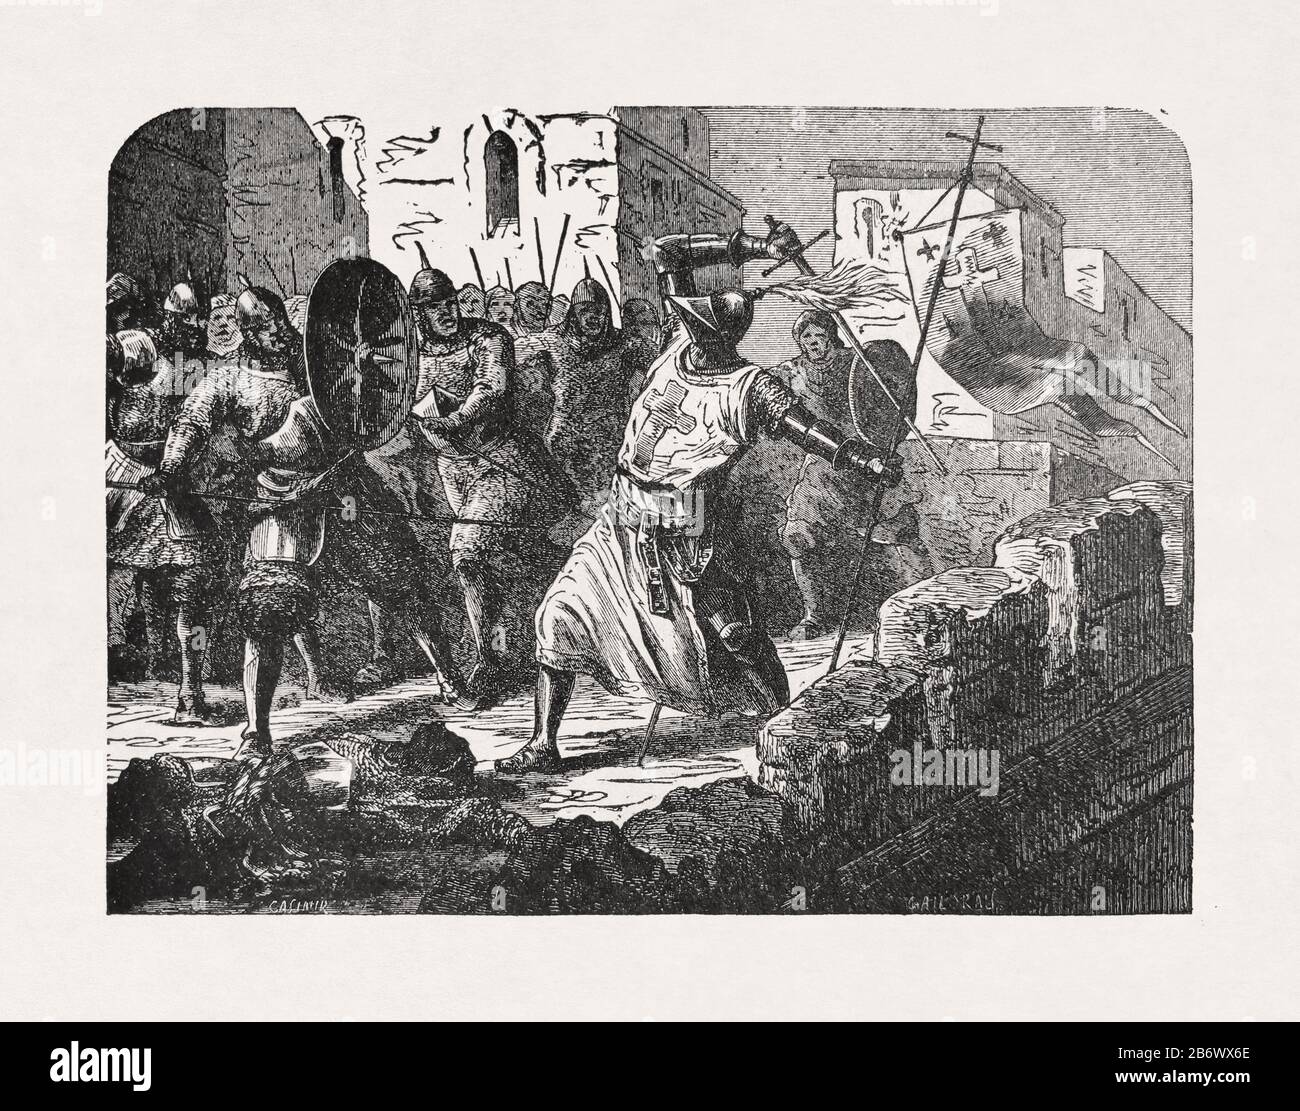 Ancienne illustration de 'Casimir' imprimée à la fin du XIXe siècle représentant un templier chevalier luttant pour sa vie à Jérusalem. Banque D'Images